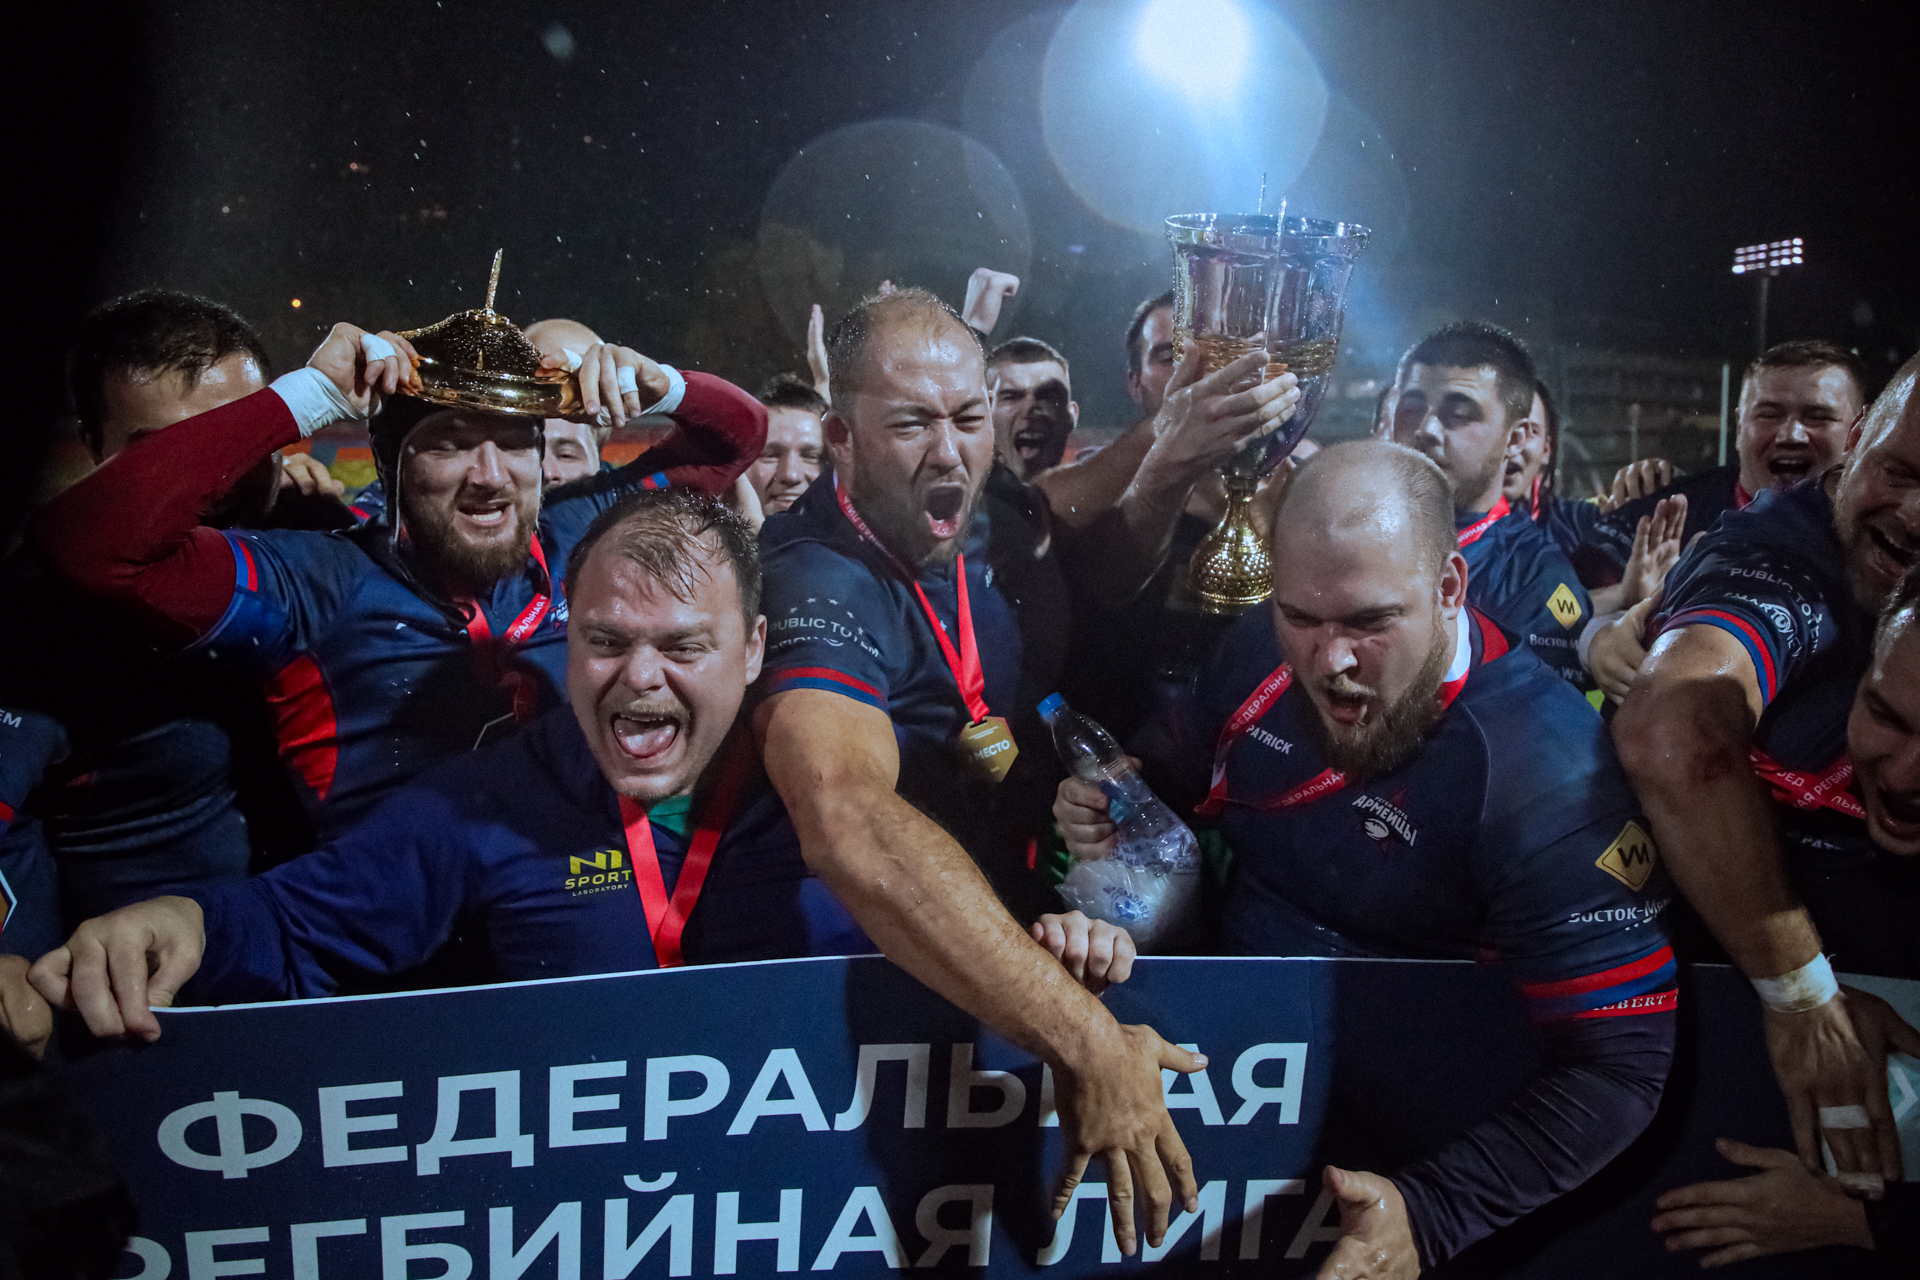 Зеленоград/Армейцы одержали победу в финалах Федеральной регбийной лиги «Трудовые резервы»